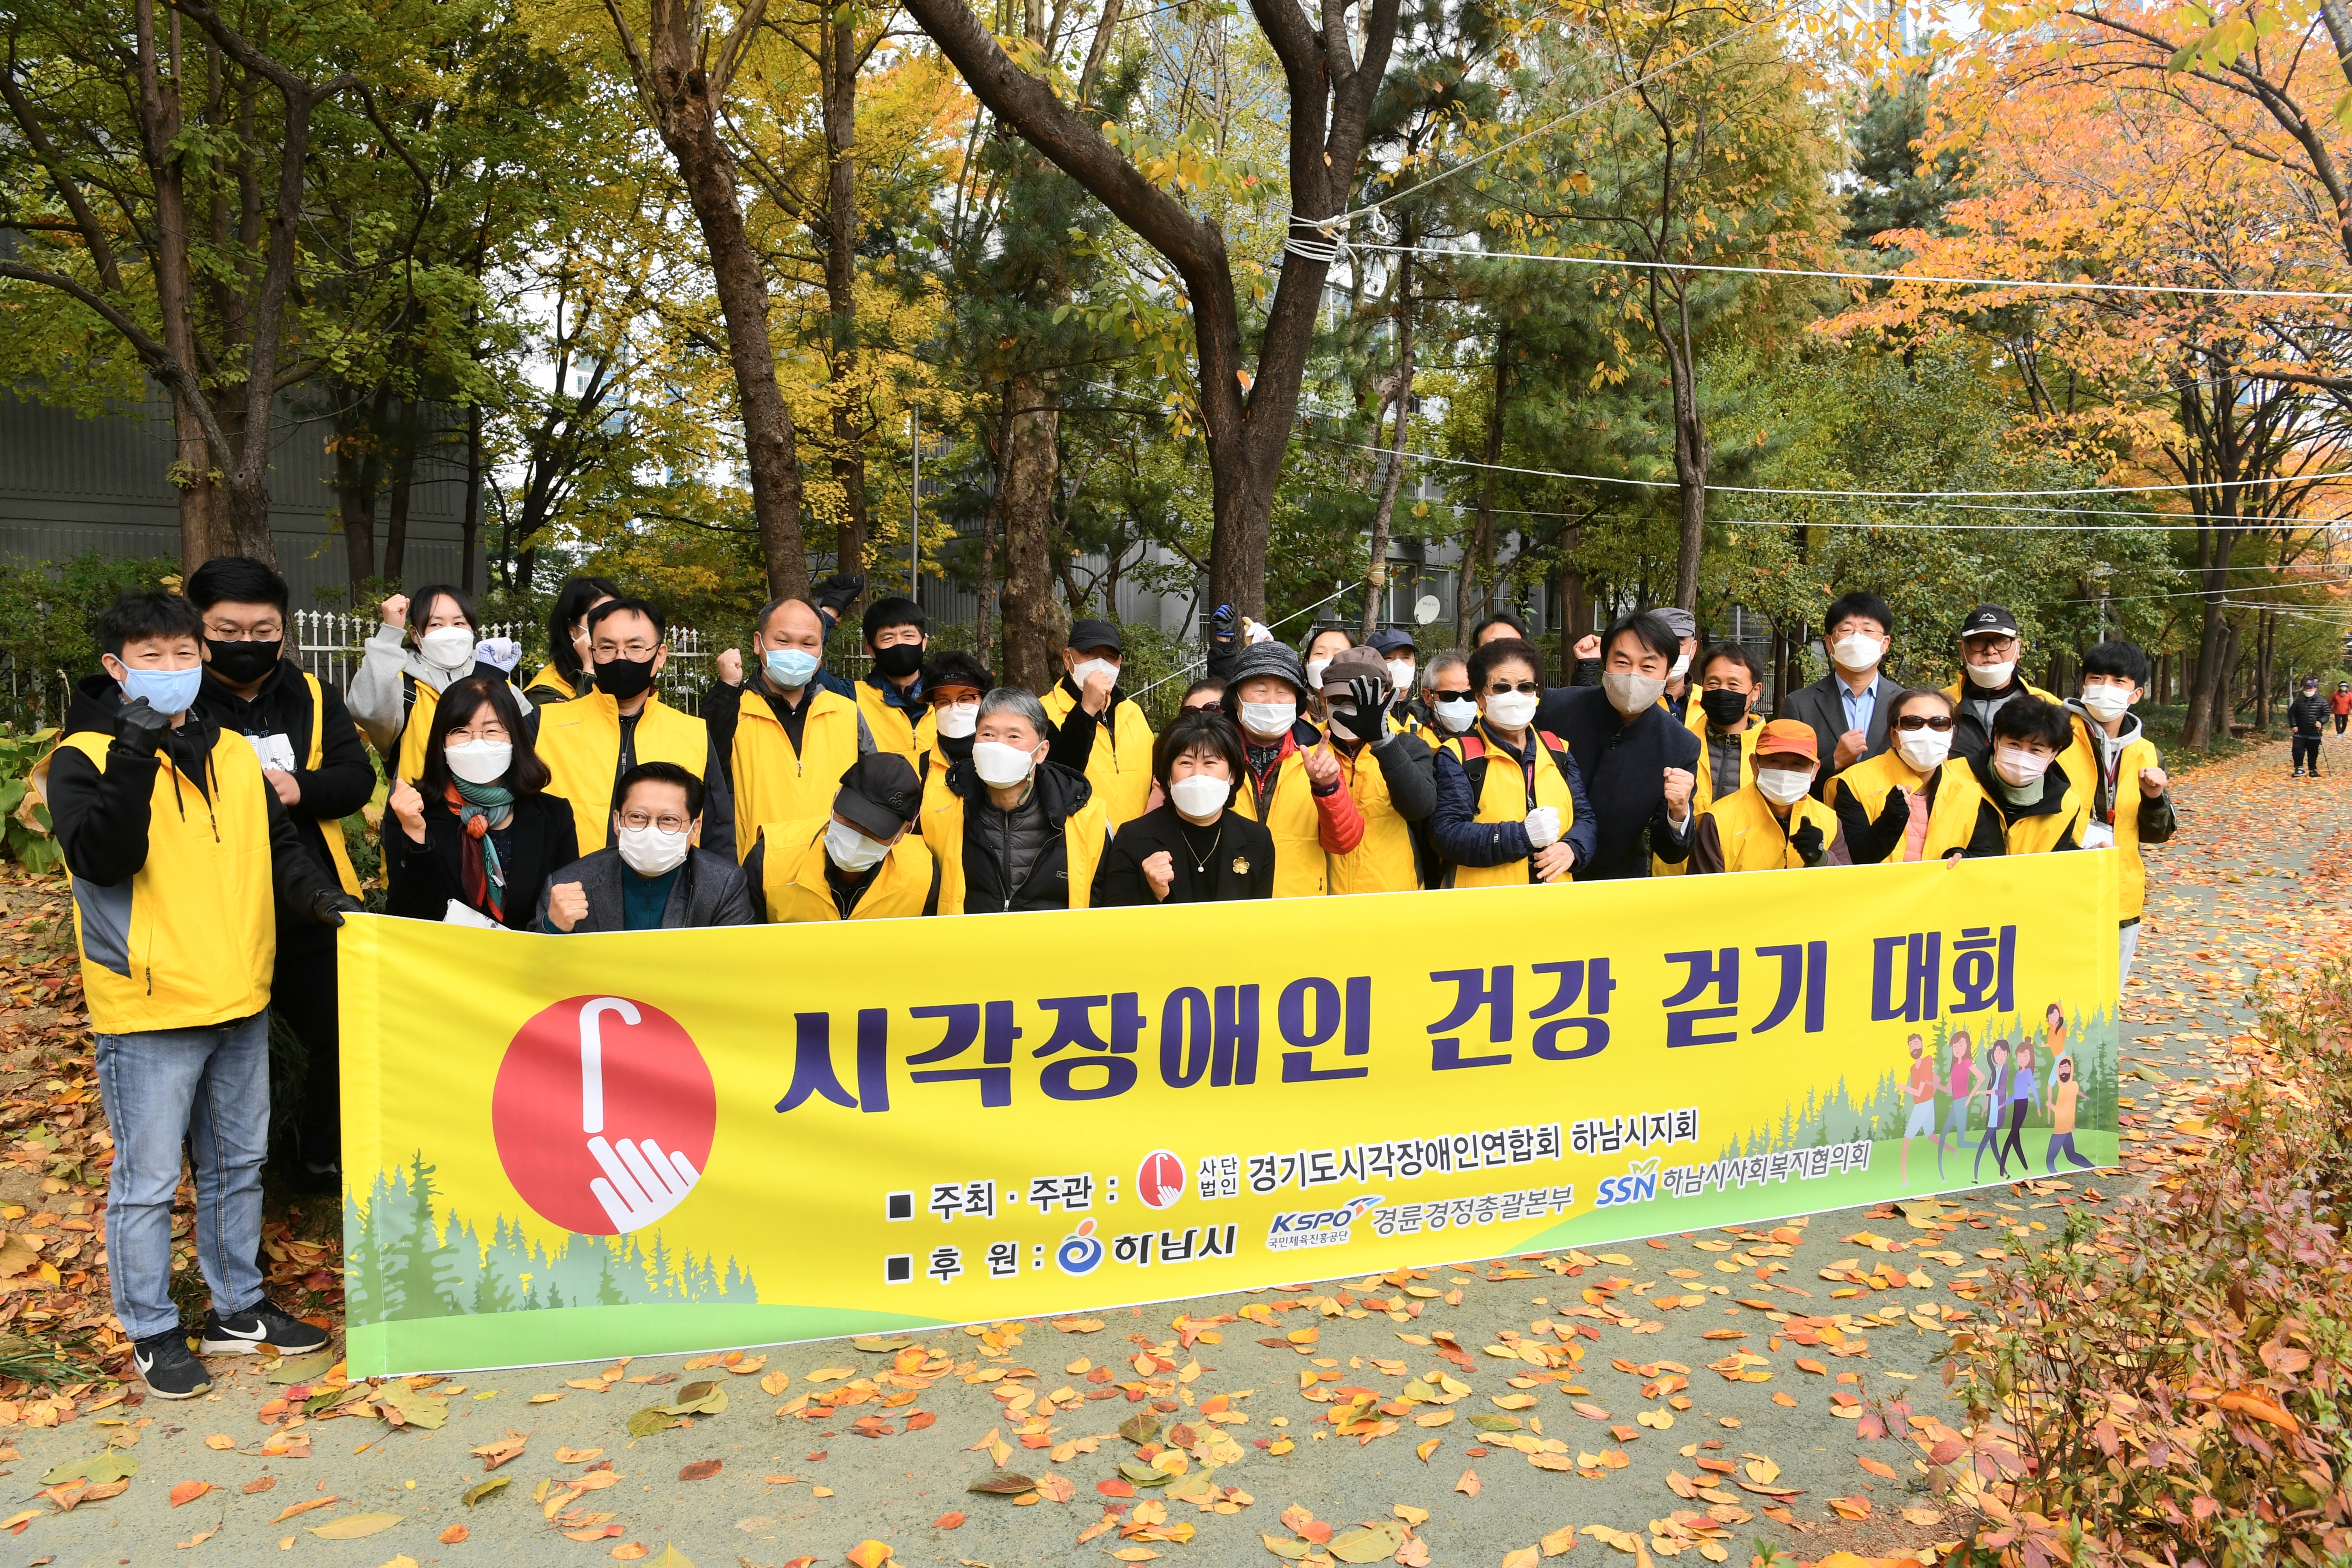 경기도시각장애인연합회 하남시지회, 시각장애인 건강 걷기 대회 개최